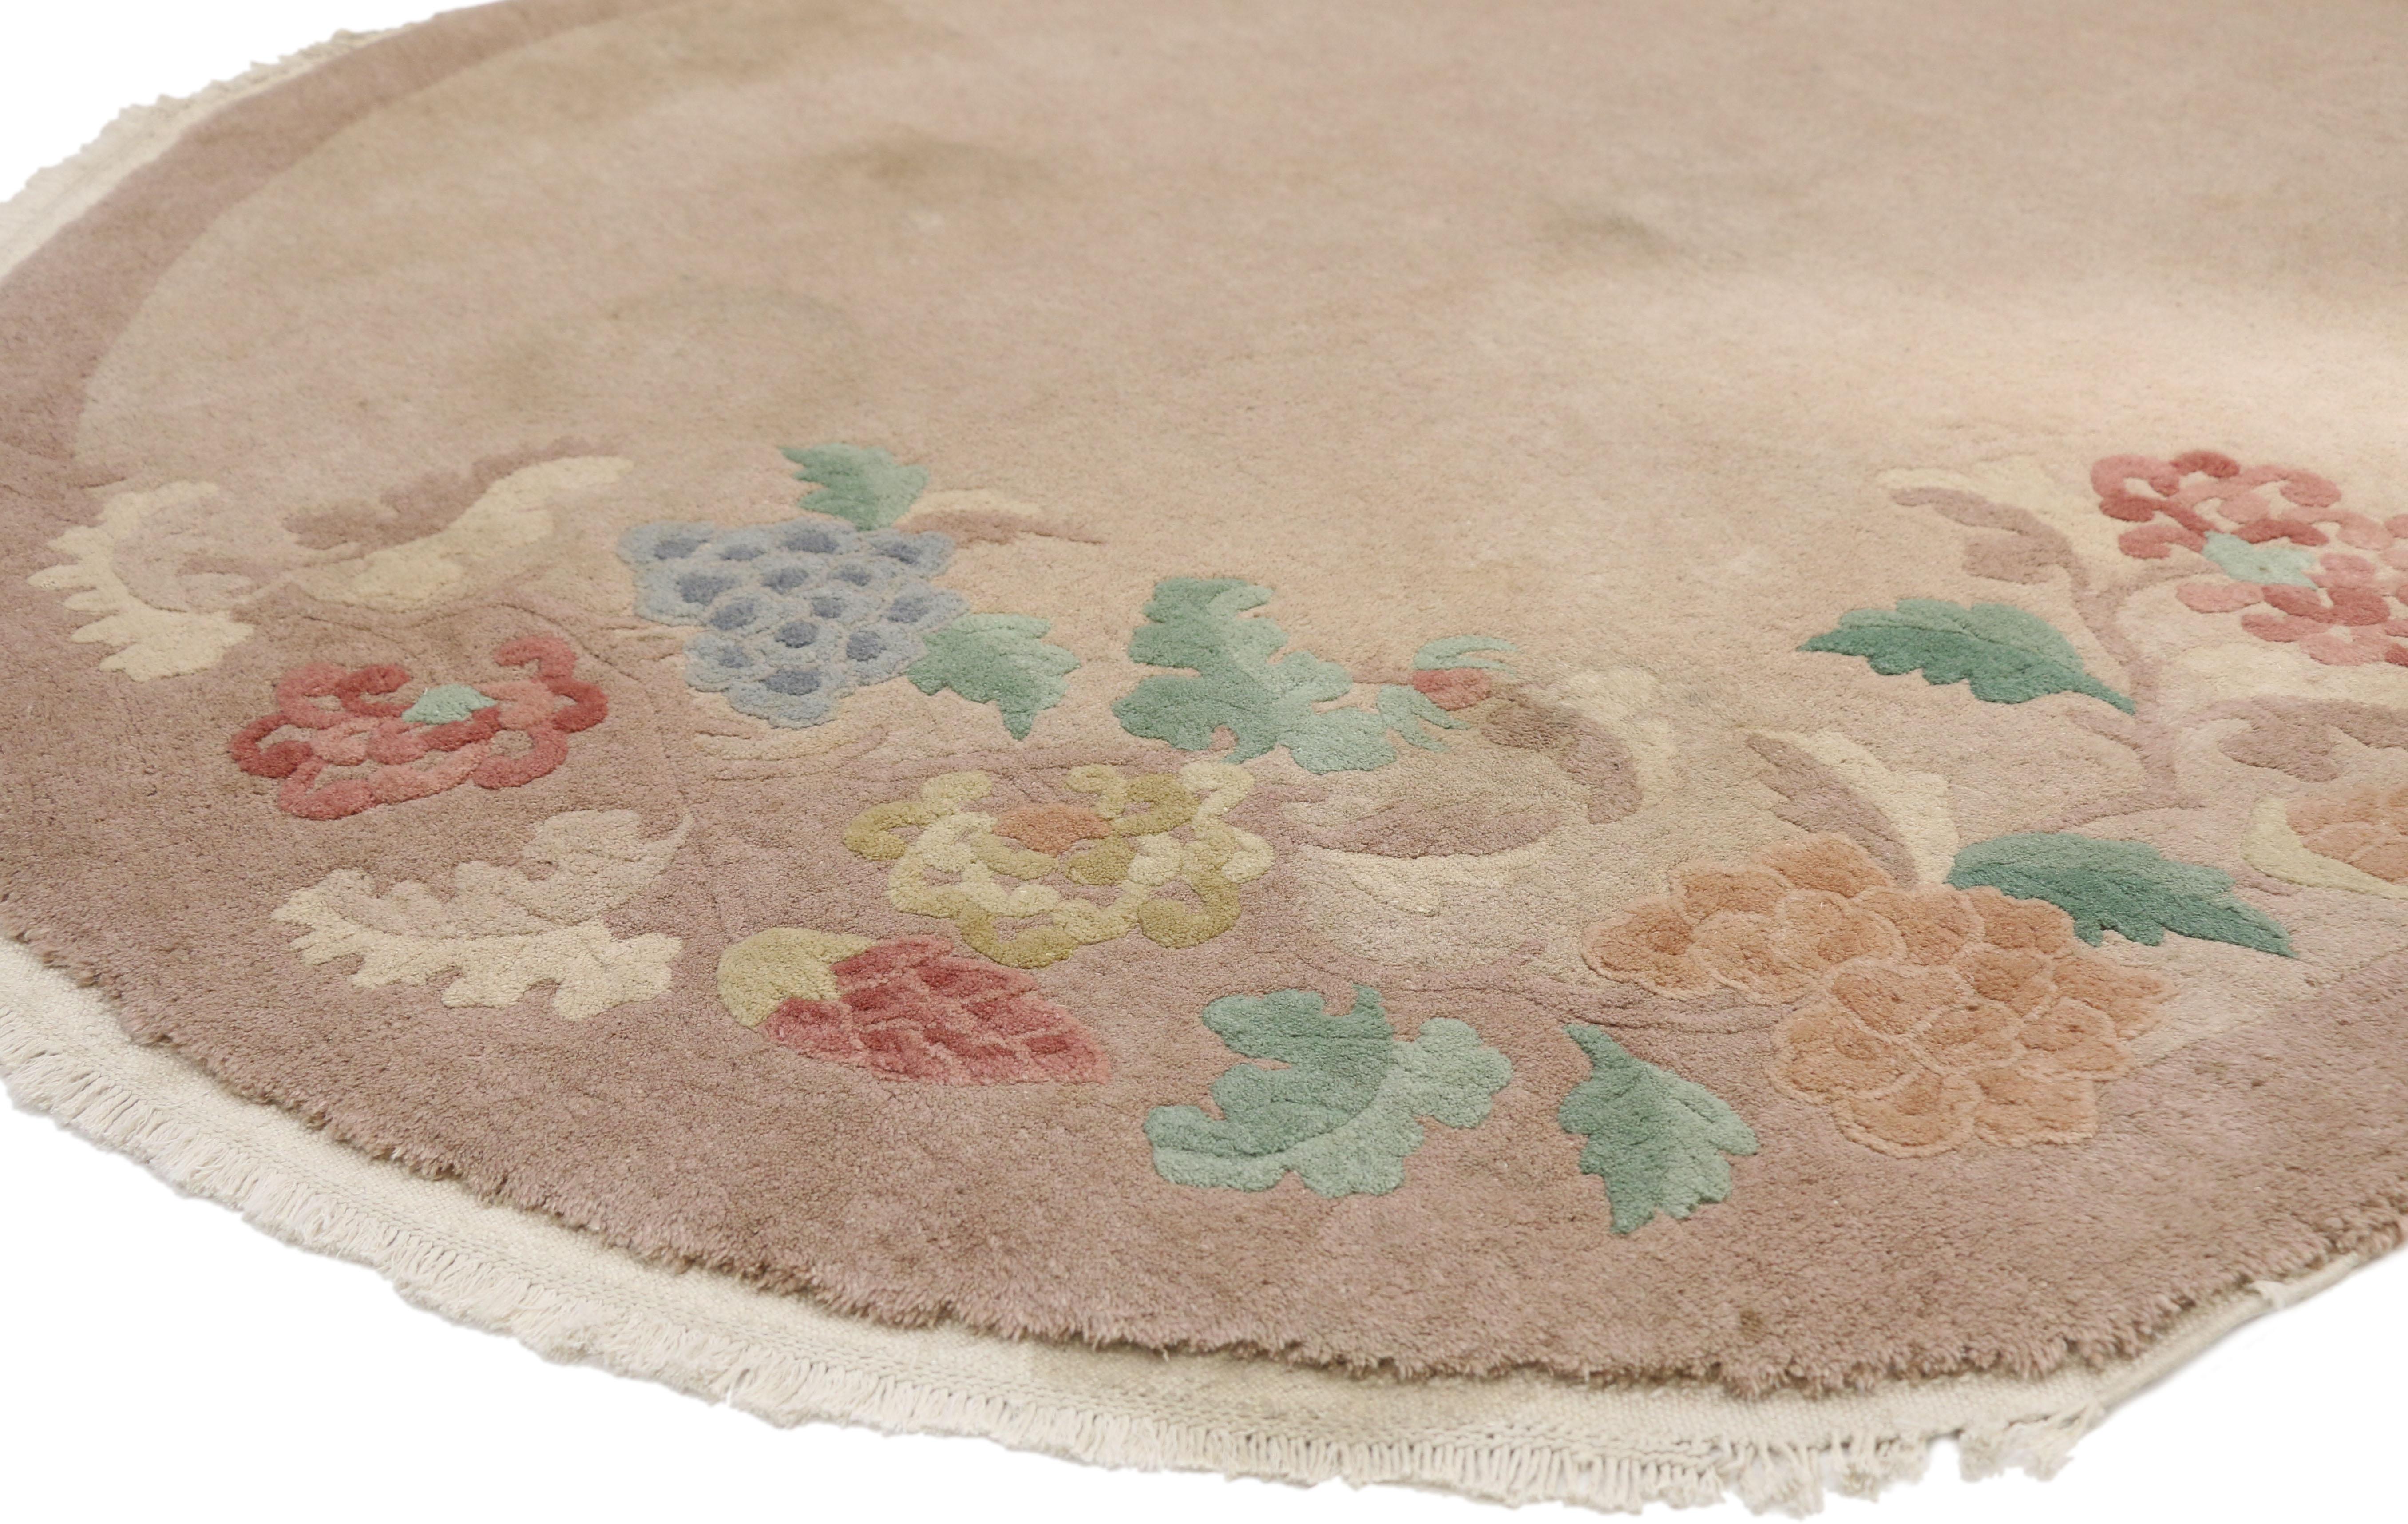 77328 tapis ovale Art Déco chinois ancien avec style chinoiserie traditionnel. Ce tapis Art déco chinois ancien en laine nouée à la main présente un champ neutre uni et une bordure ornée de trois vignes florales défilant le long des bords de la